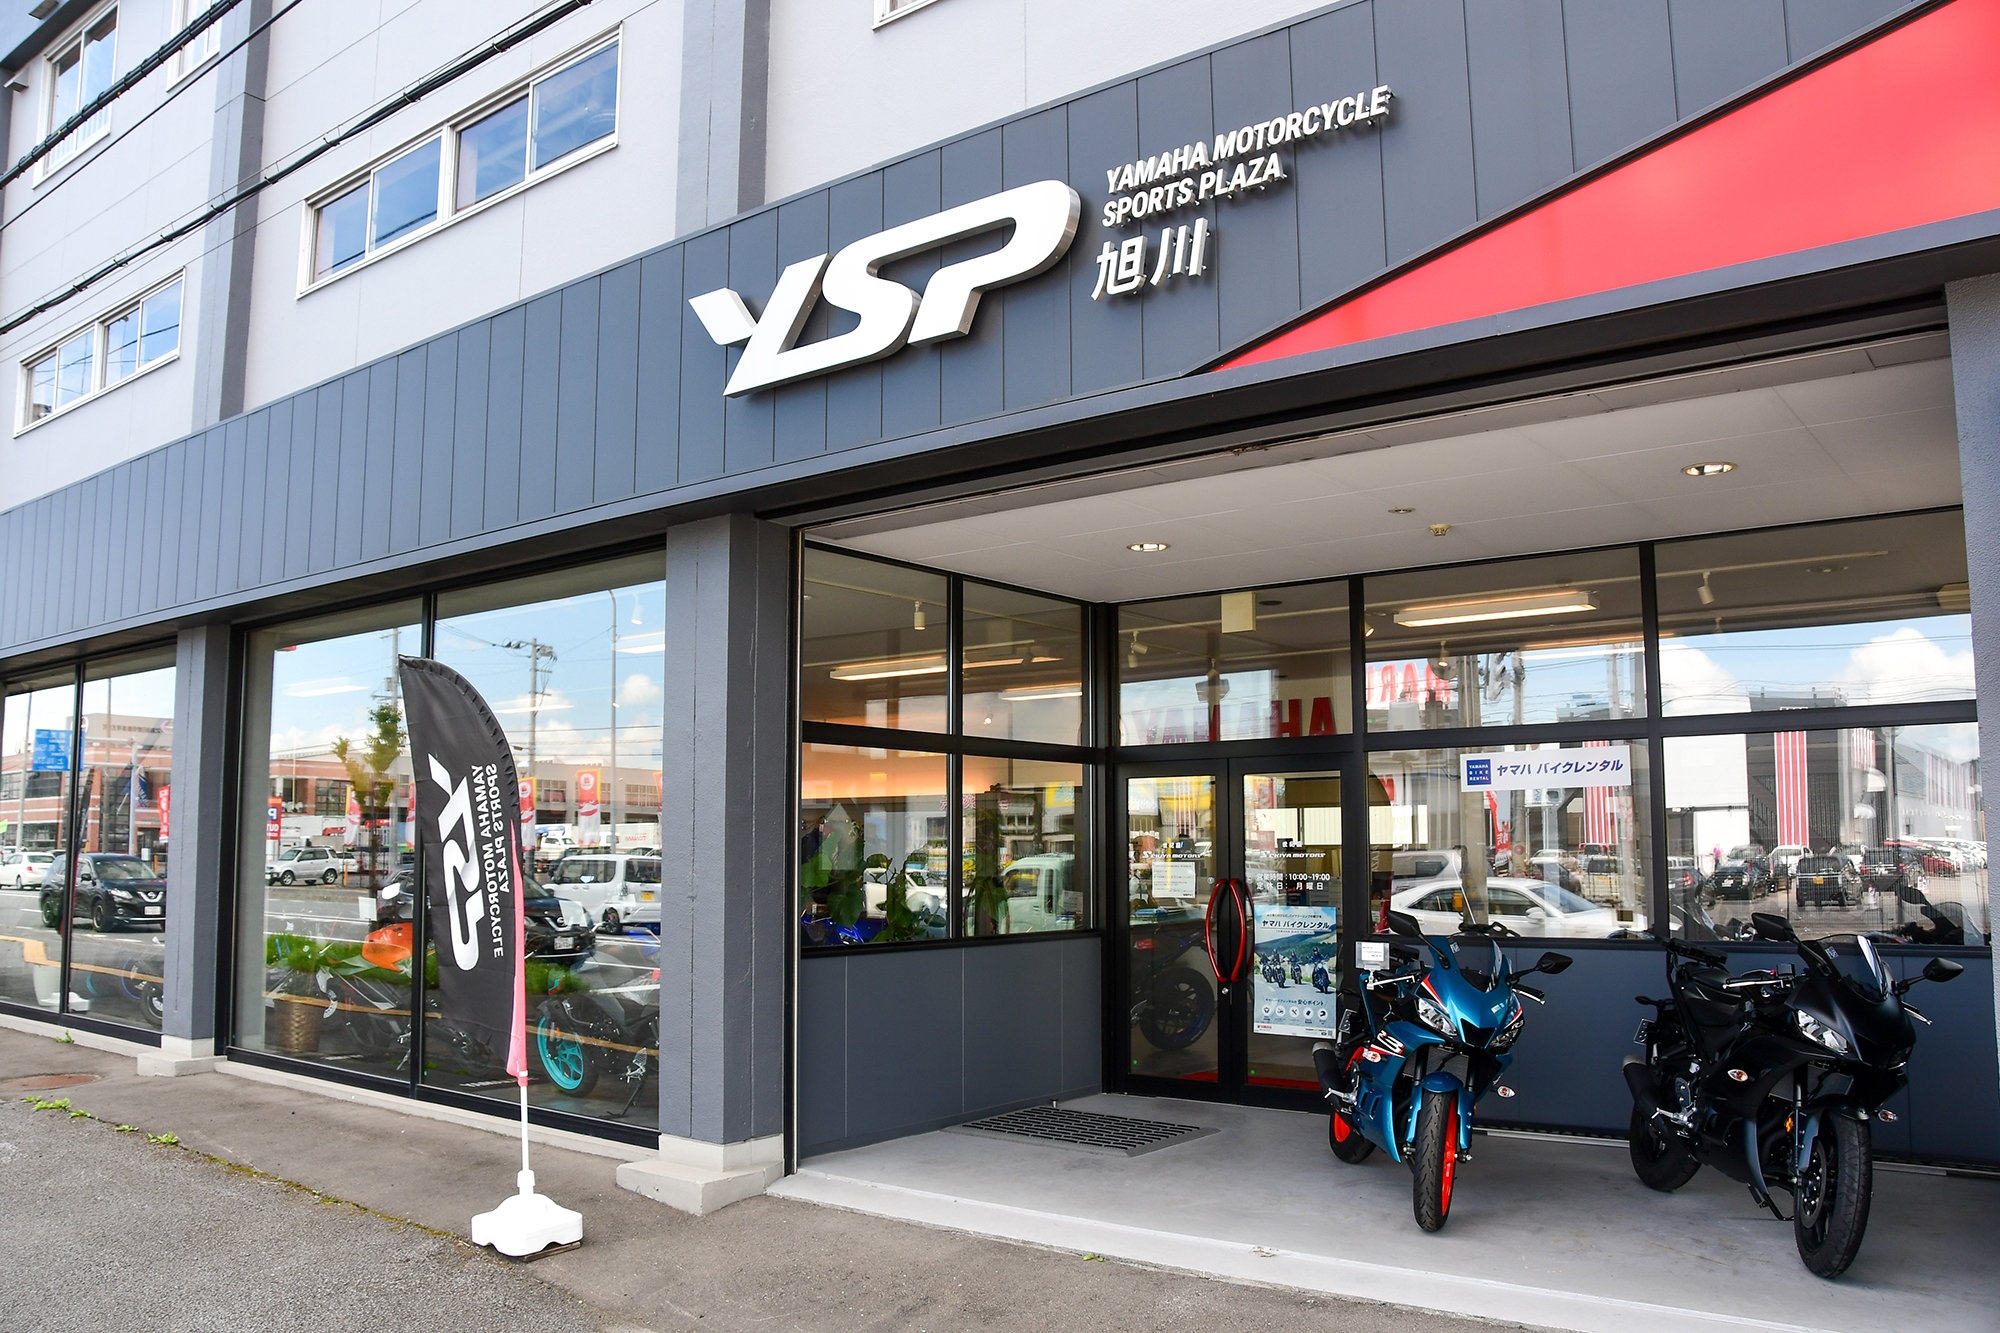 ヤマハを愛するすべてのお客さまに「最高のブランド体験」をお約束するヤマハスポーツバイク専門店「YSP」。